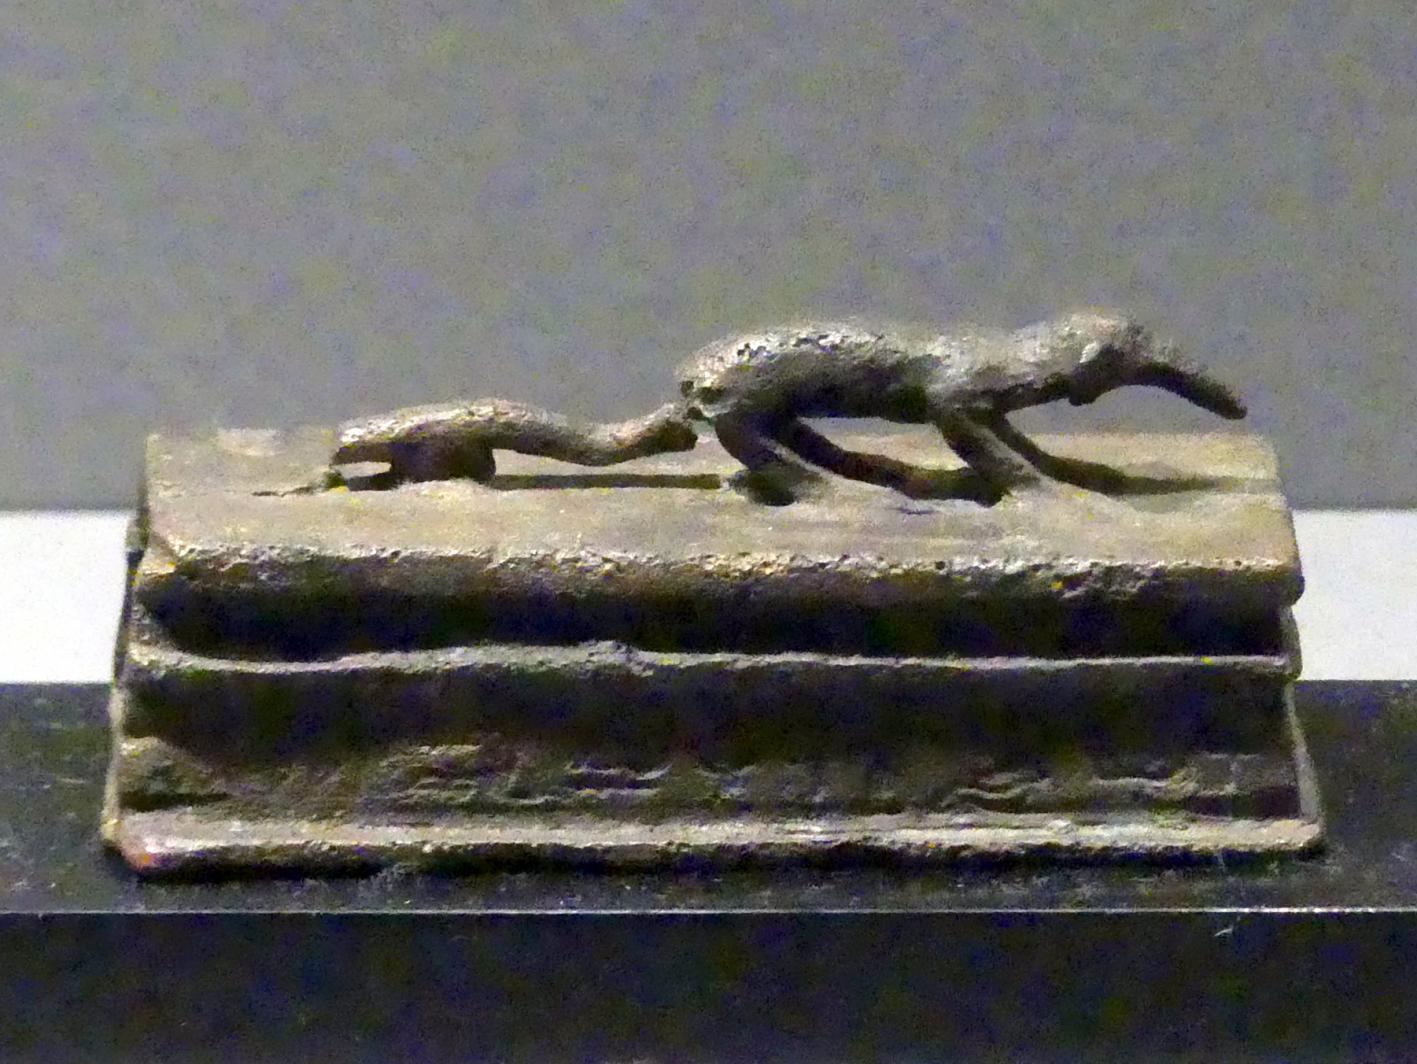 Figur einer Spitzmaus auf einem Kastensarg, Ptolemäische Zeit, 400 v. Chr. - 1 n. Chr., 300 - 1 v. Chr., Bild 1/2